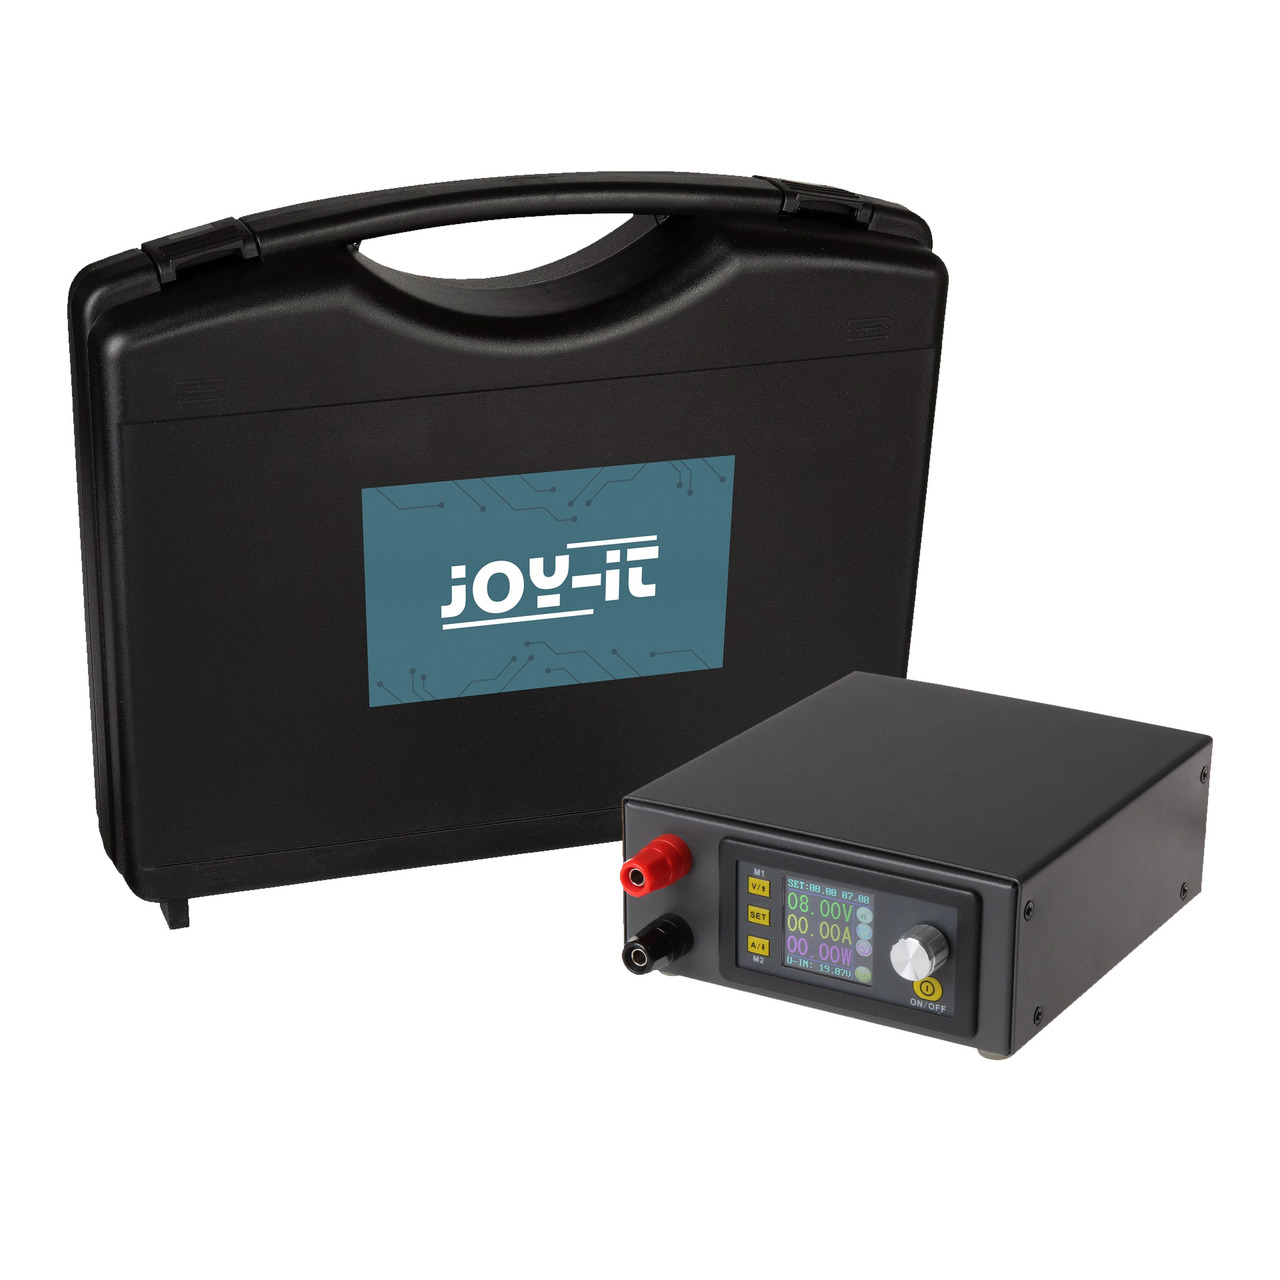 Joy-IT Step-up-Step-down-Labornetzgert JT-DPH5005-Set- inkl- Gehuse und Zubehr- 0-50 V-0-5 A